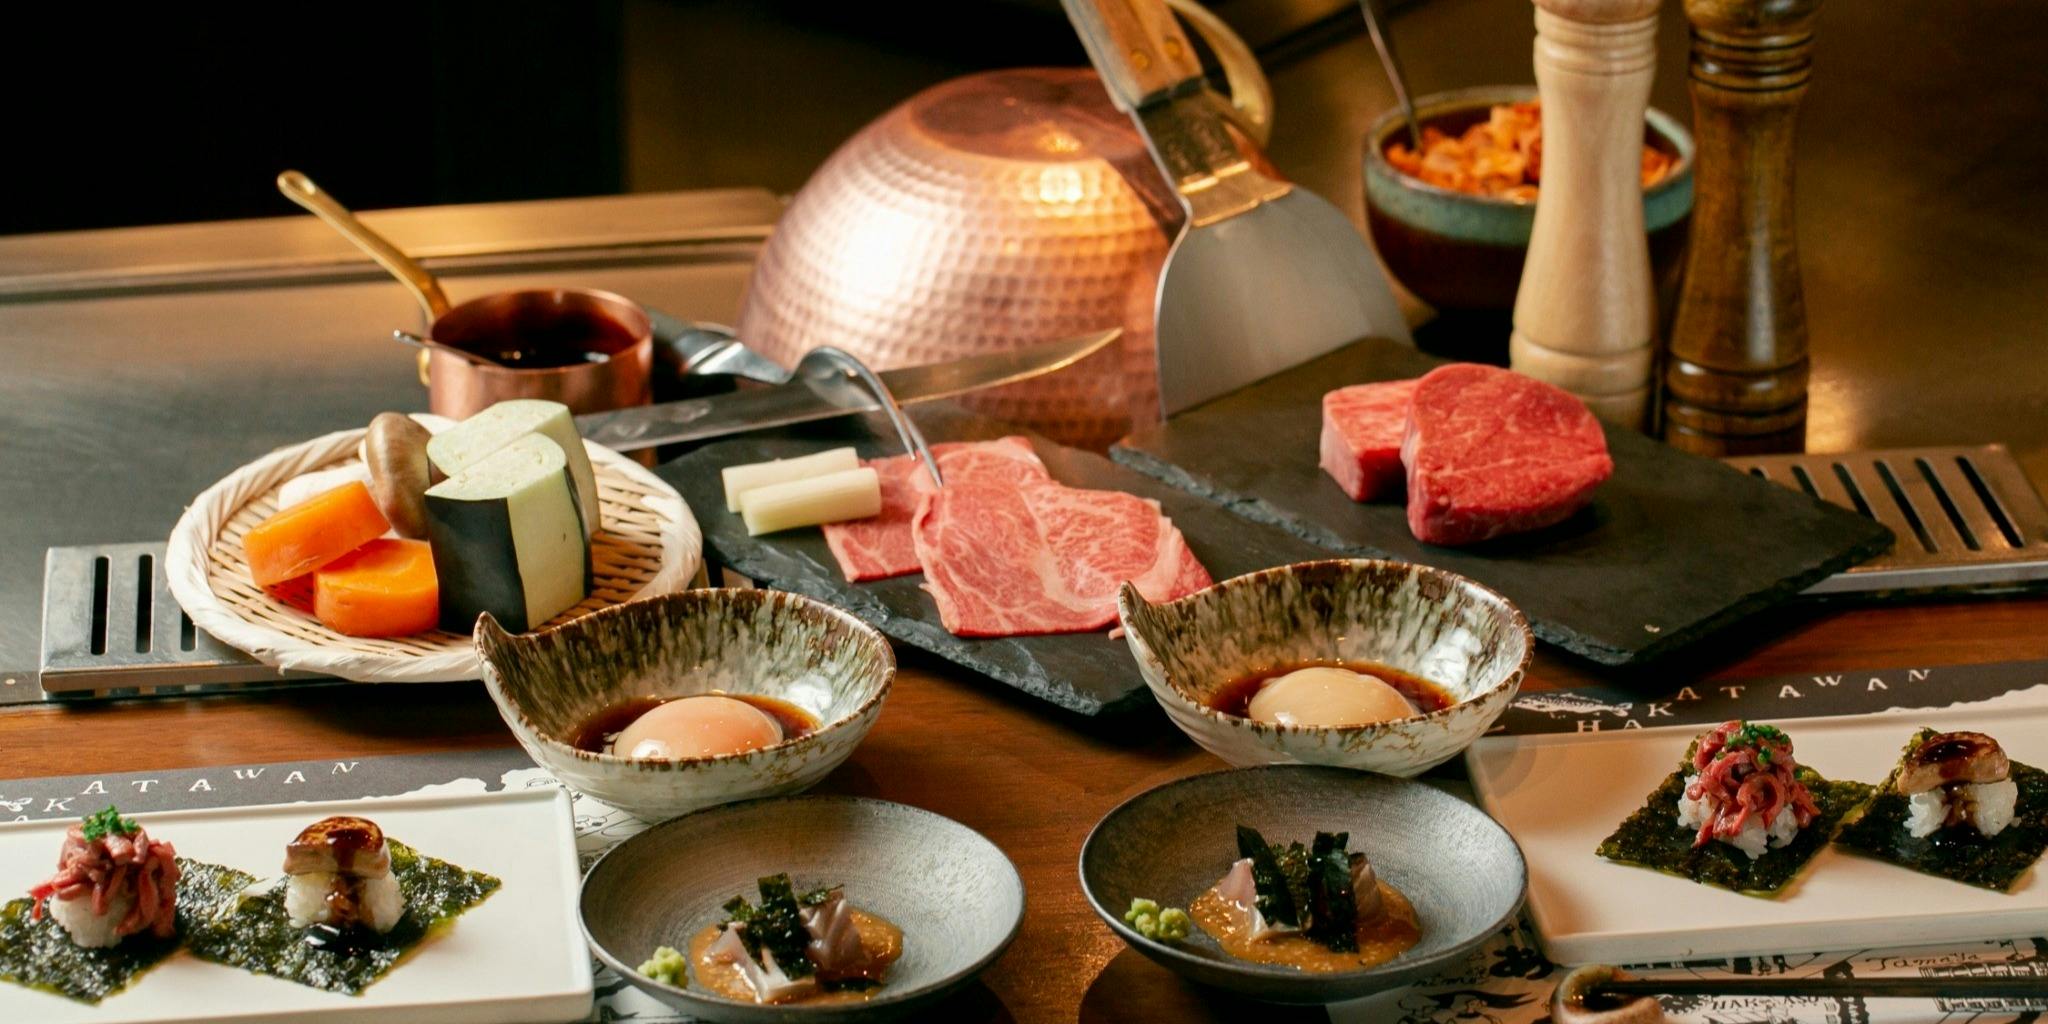 ディナー With The Style ステーキハウス ミディアムレア Steak House Medium Rare With The Style Fukuoka ウィズ ザ スタイル 福岡 鉄板焼 一休 Comレストラン